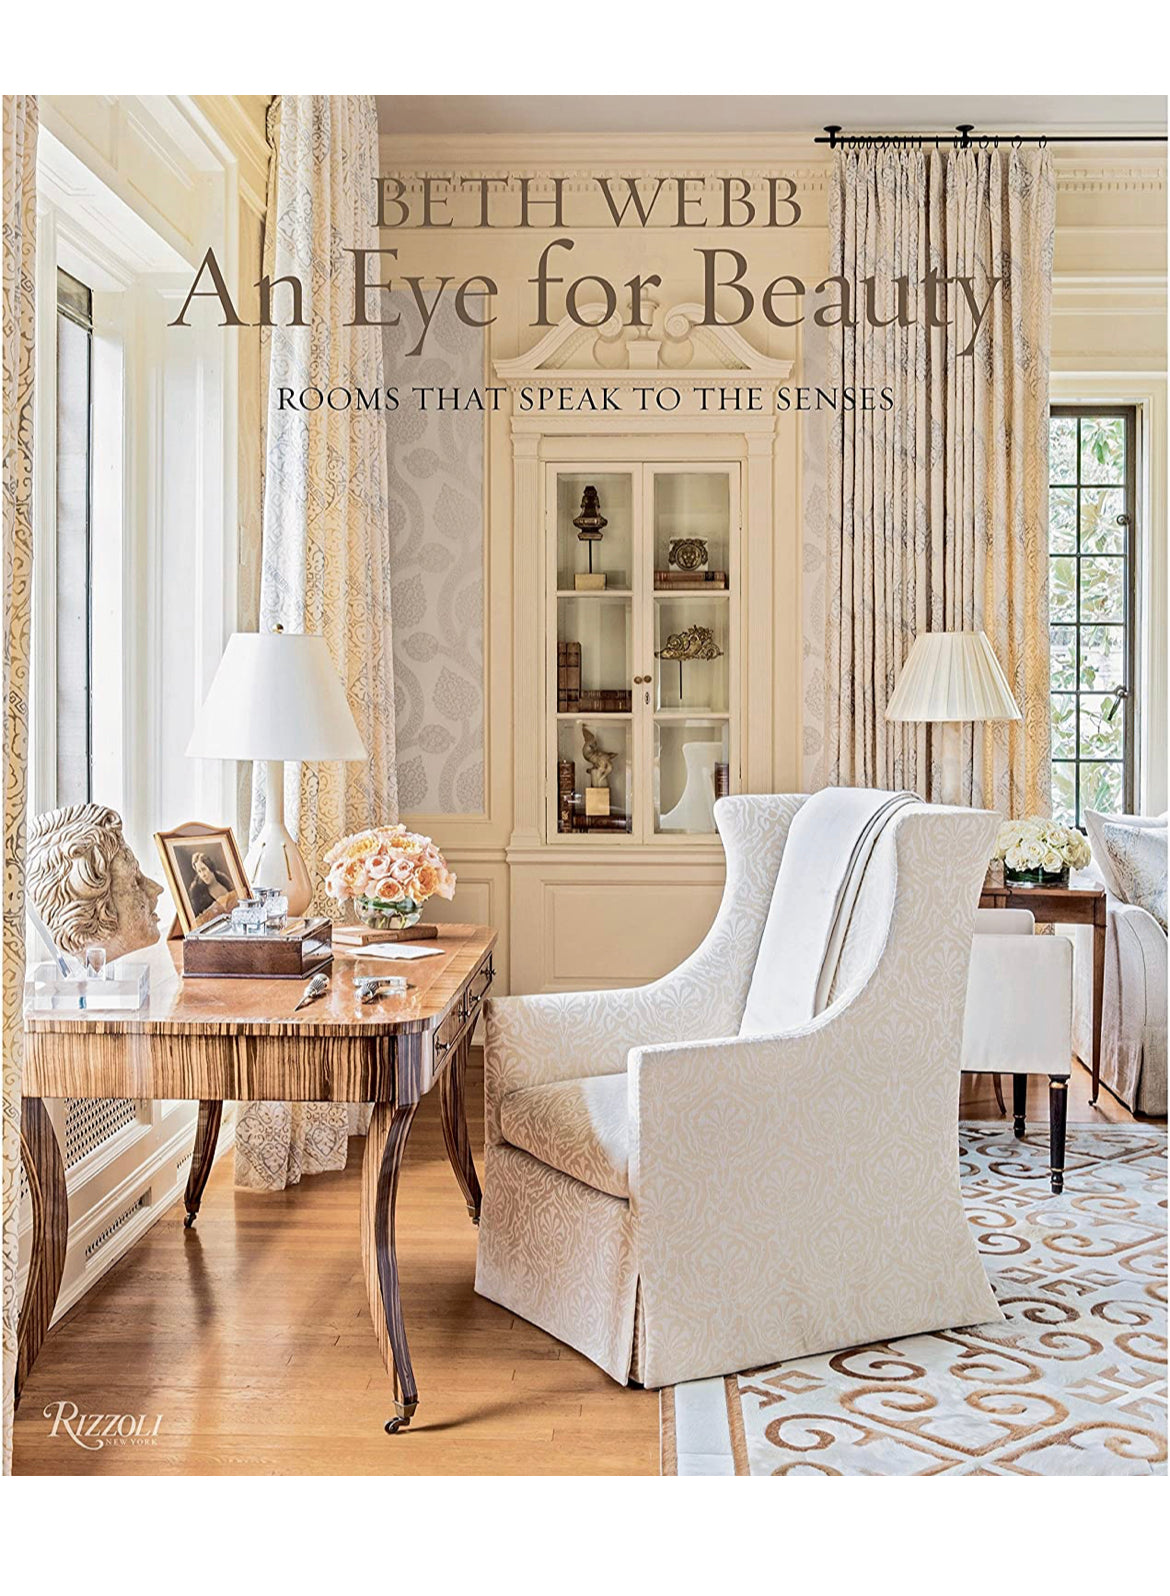 Beth Webb “An Eye for Beauty” Book